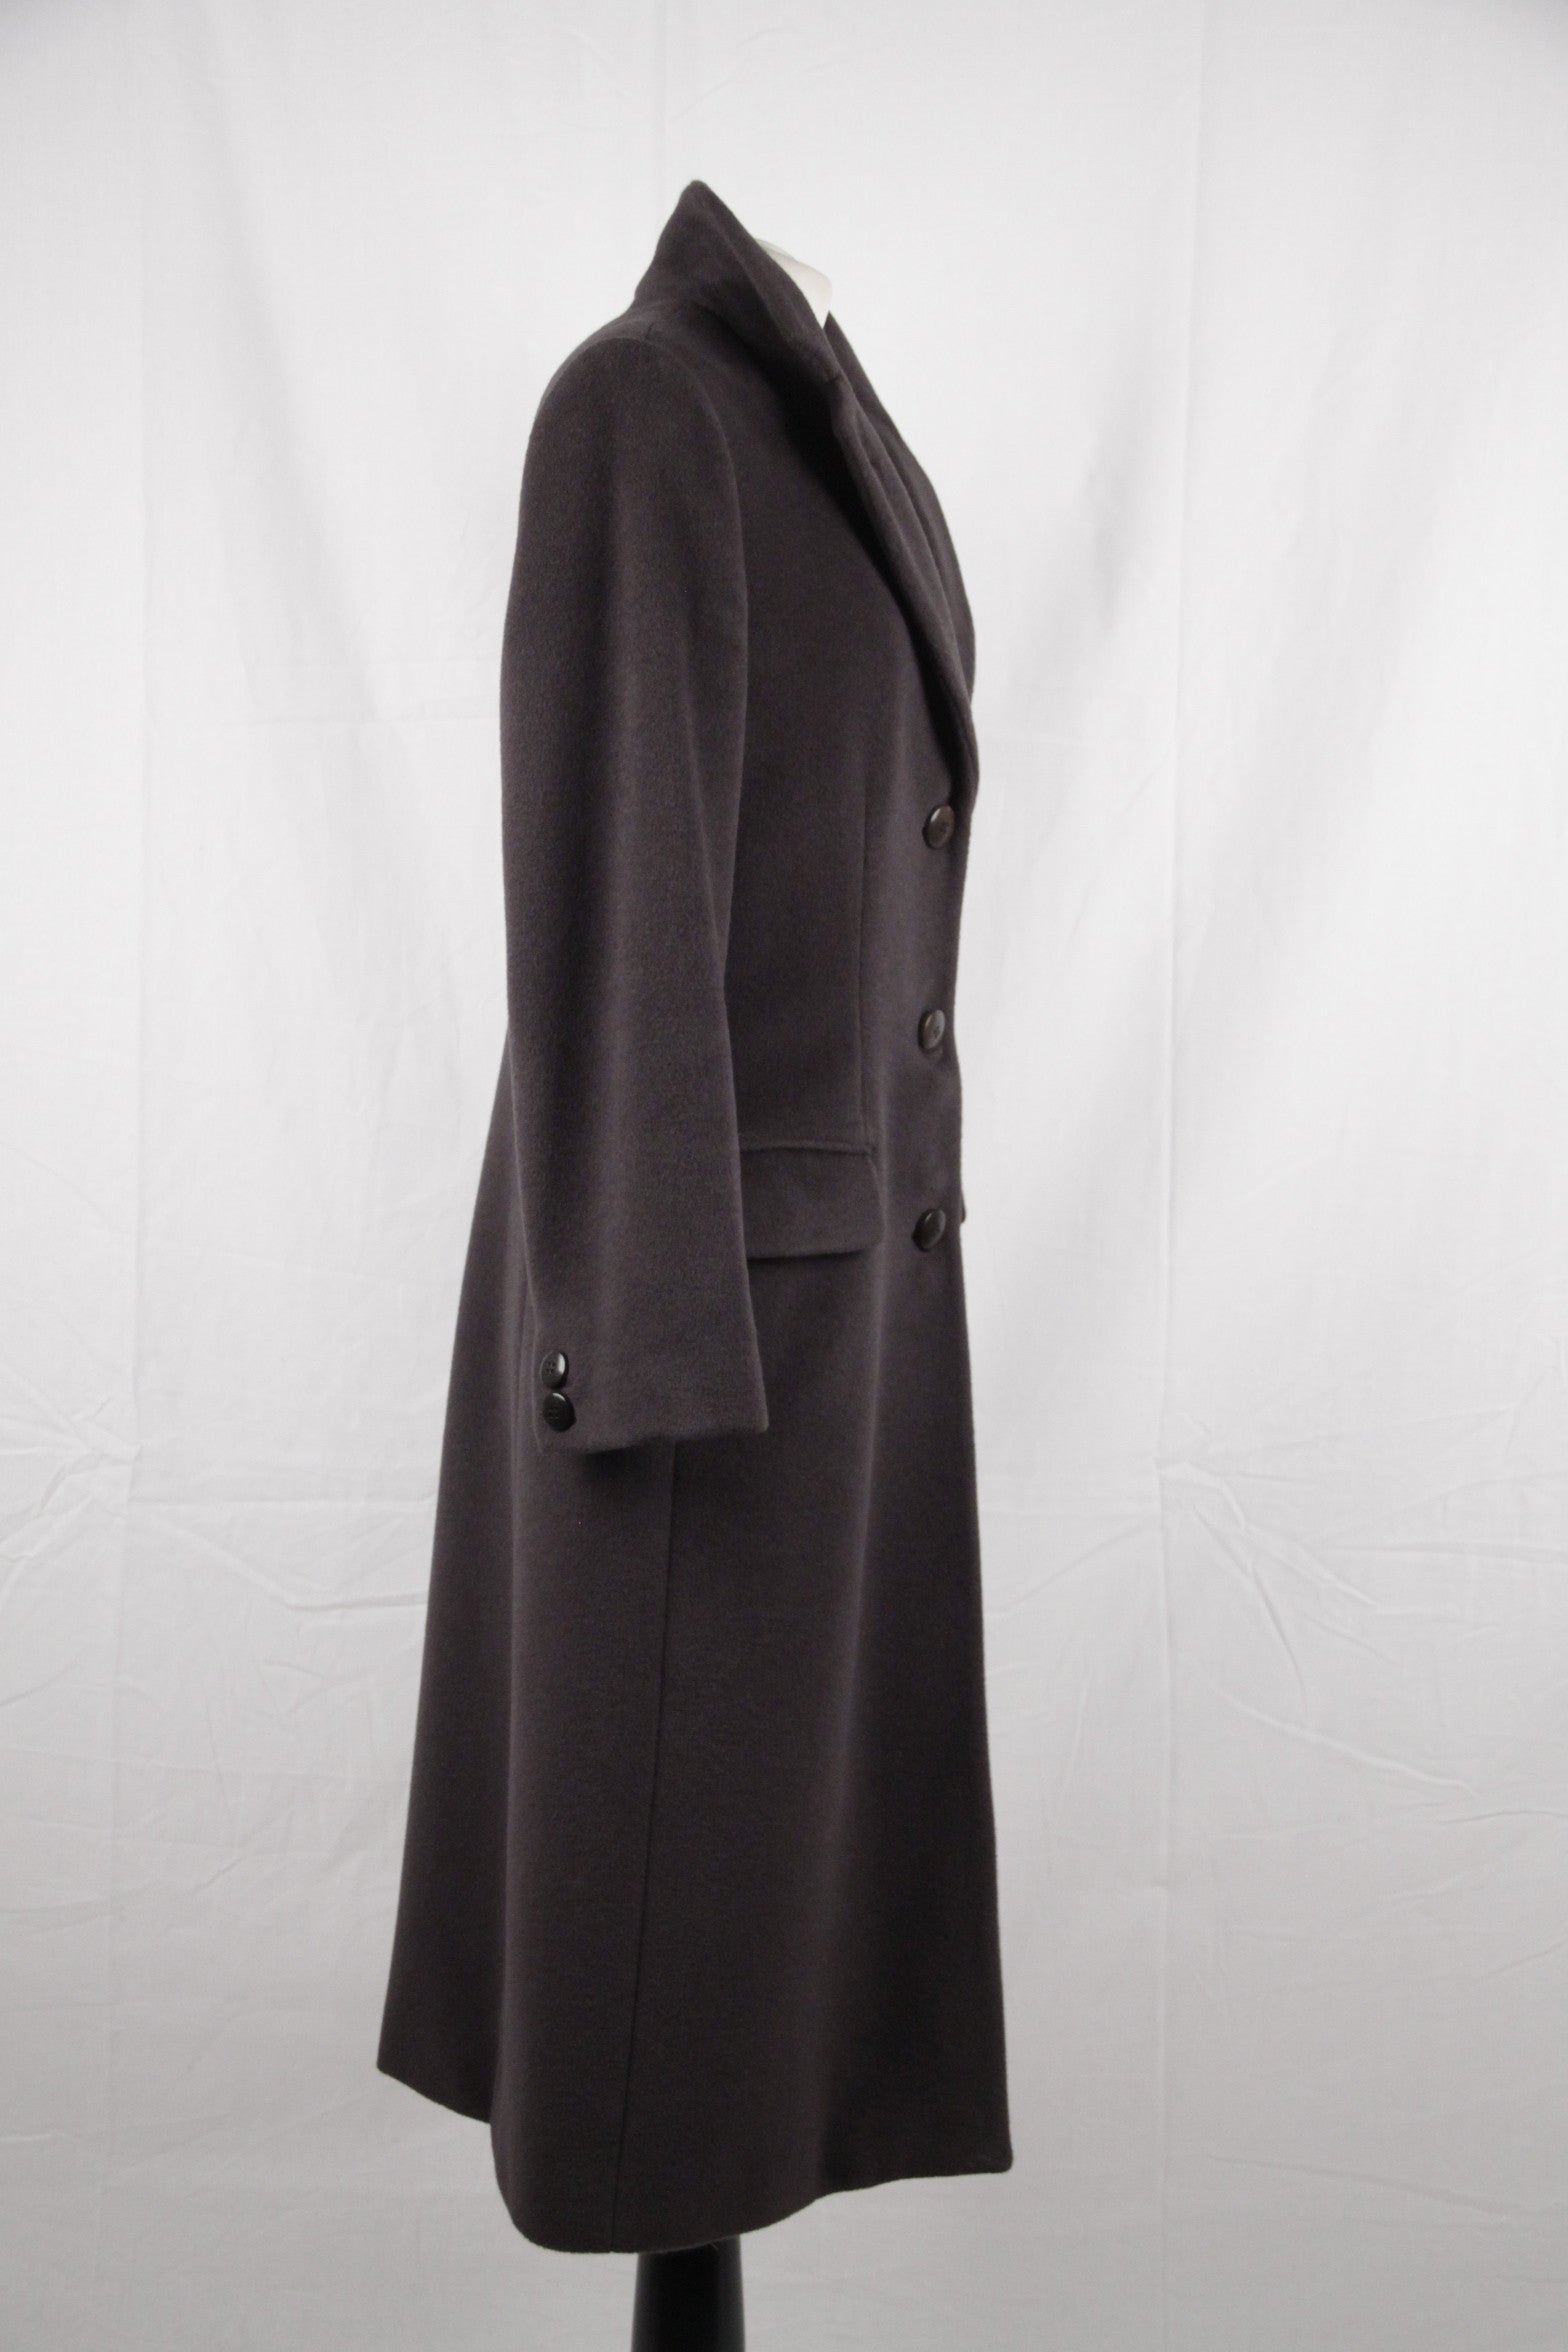 ARMANI COLLEZIONI Anthracite Gray Wool and Cashmere COAT Size 40 For Sale  at 1stDibs | armani collezioni cashmere coat